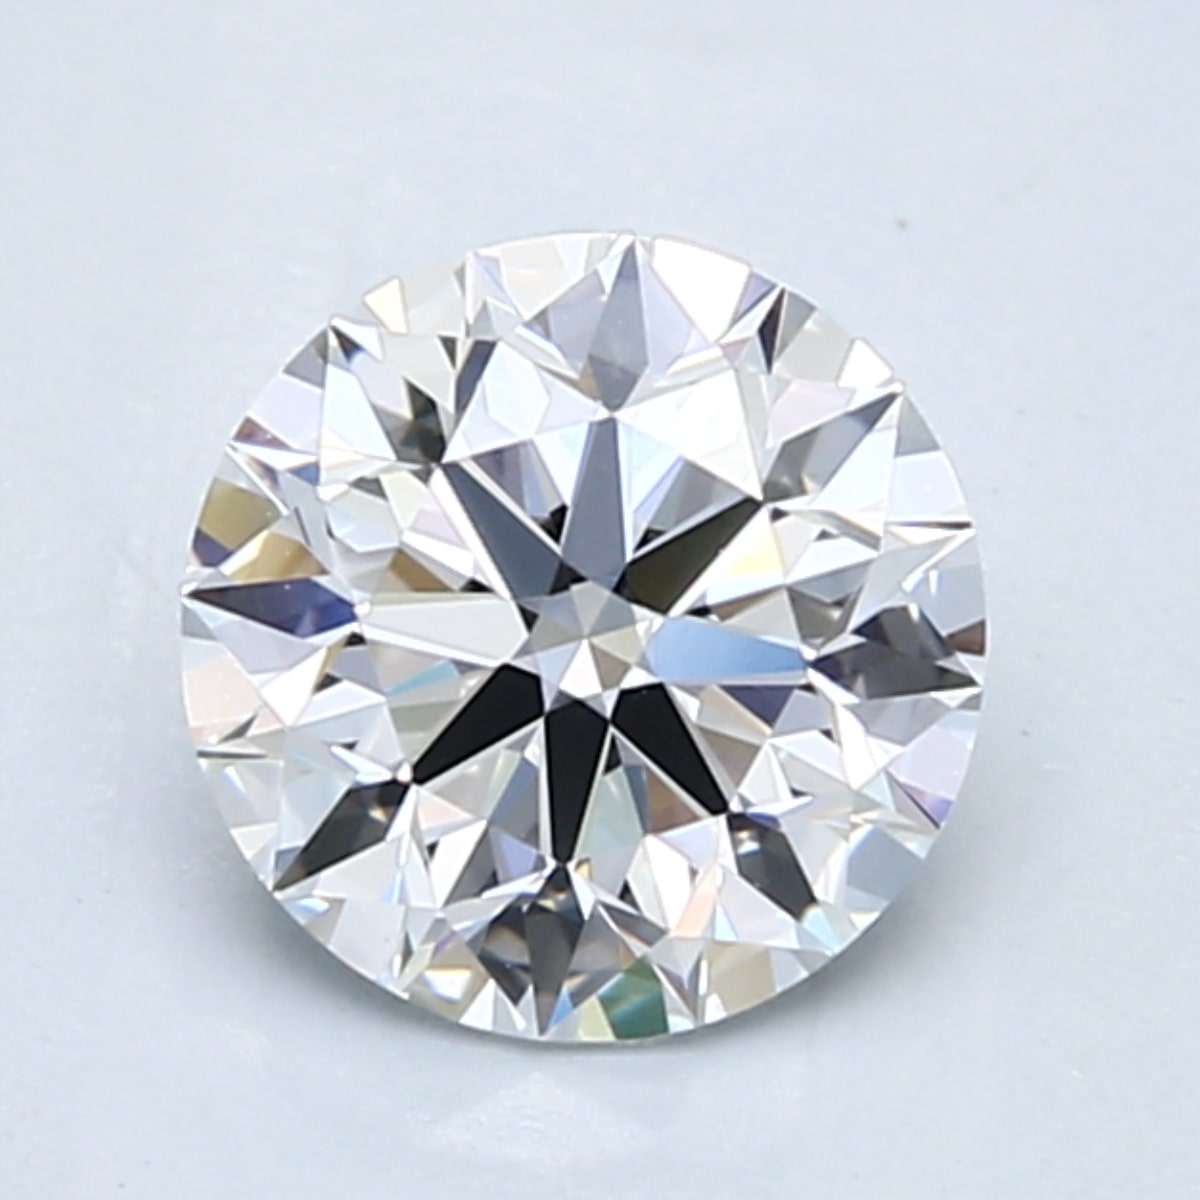 1.5 carat D color diamond